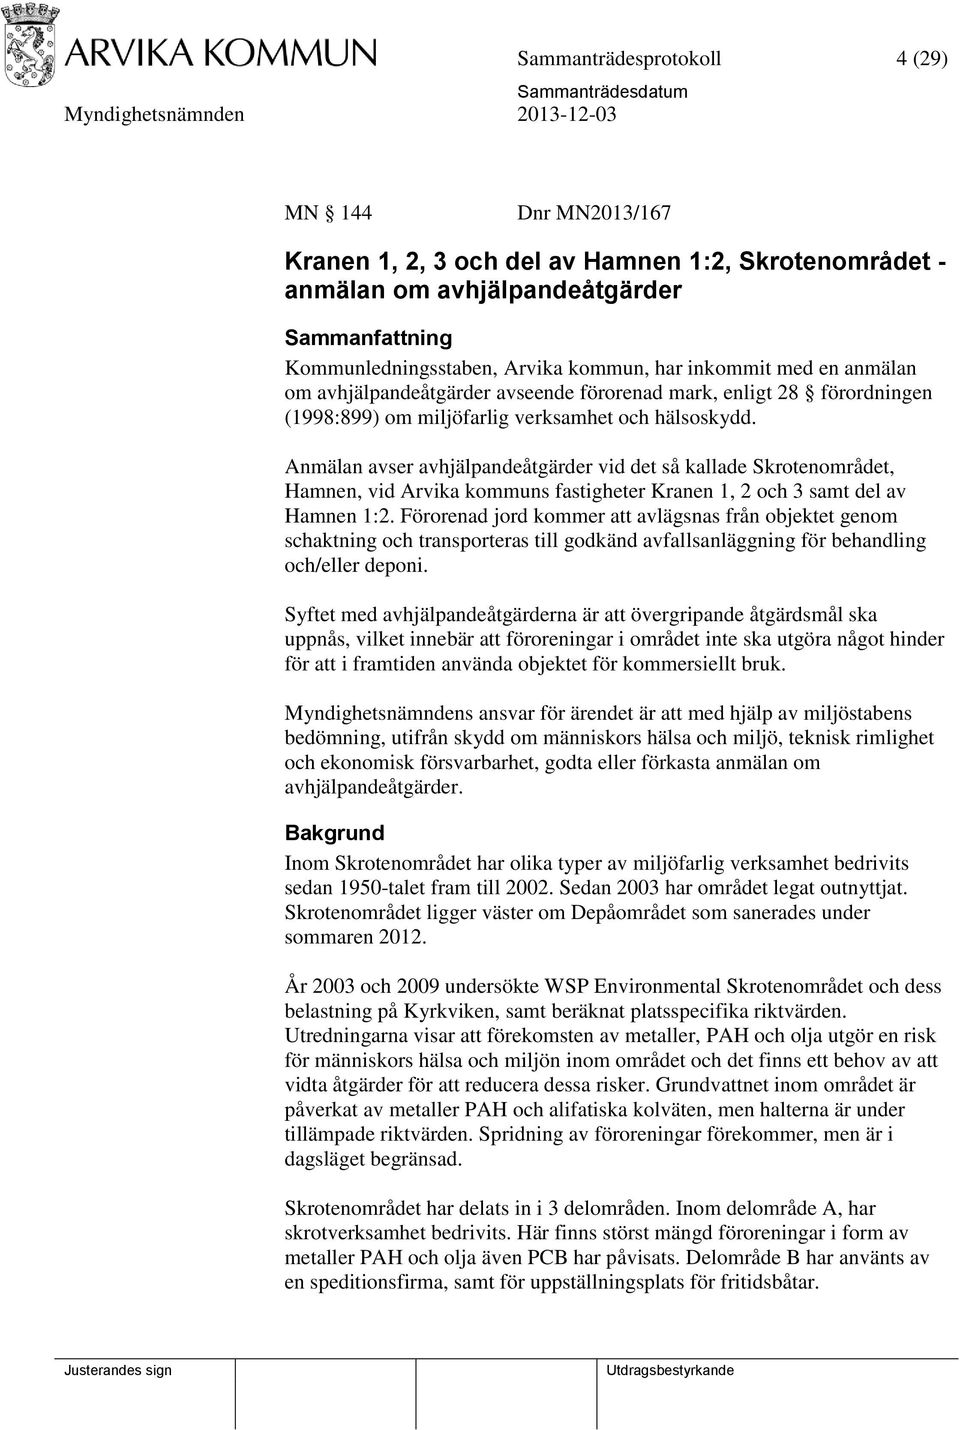 Anmälan avser avhjälpandeåtgärder vid det så kallade Skrotenområdet, Hamnen, vid Arvika kommuns fastigheter Kranen 1, 2 och 3 samt del av Hamnen 1:2.